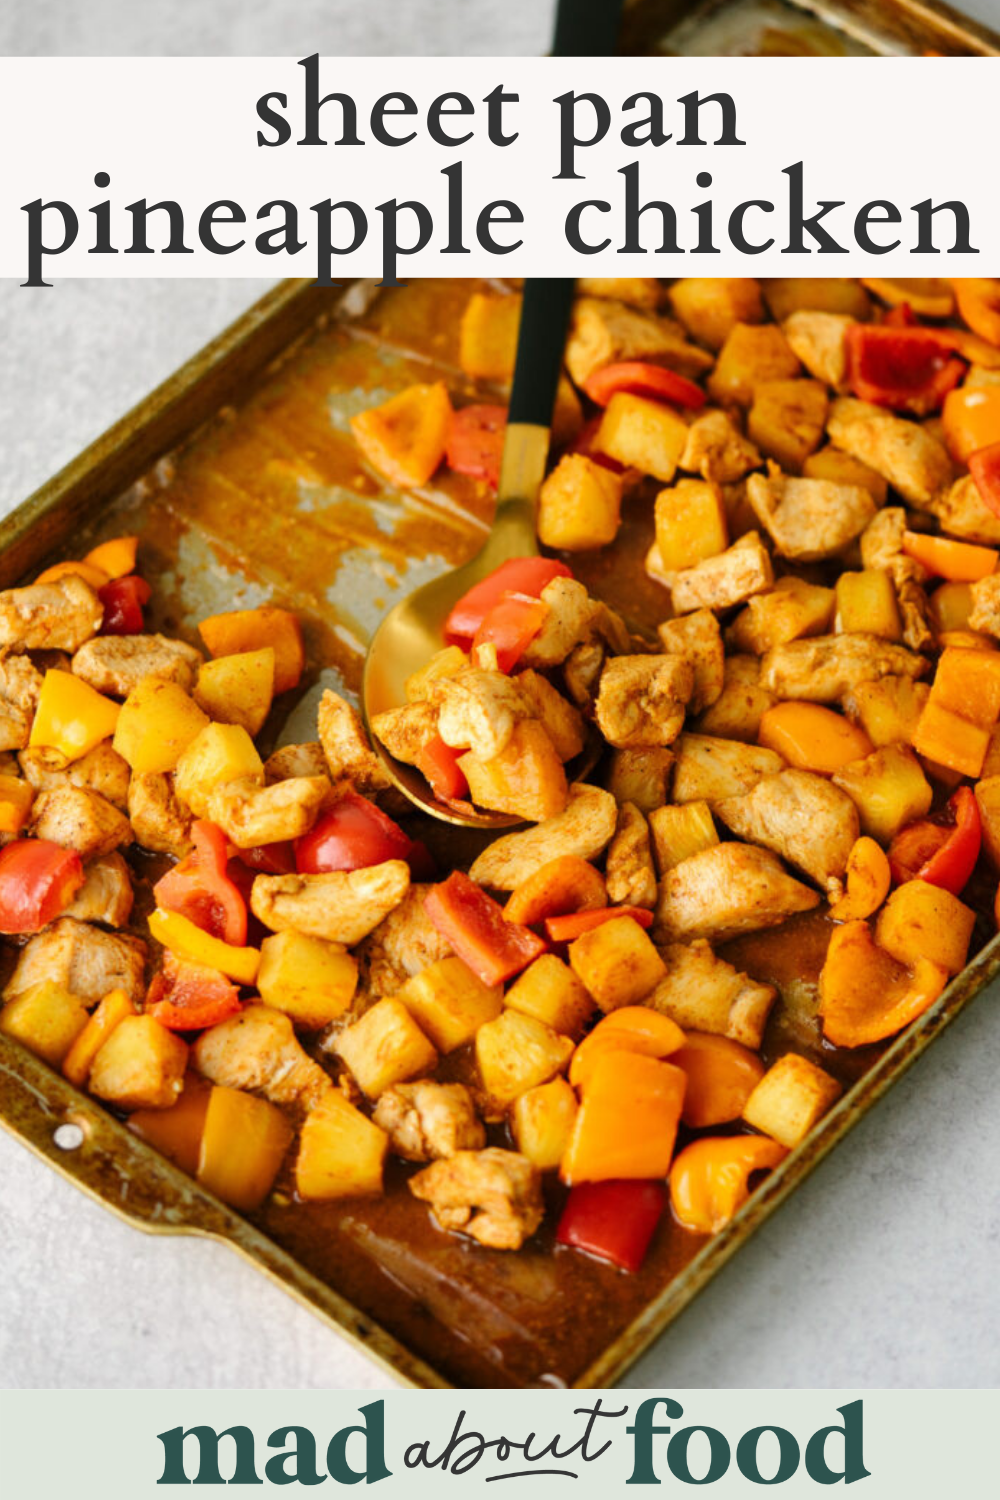 Image for pinning Sheet Pan Pineapple Chicken recipe on Pinterest